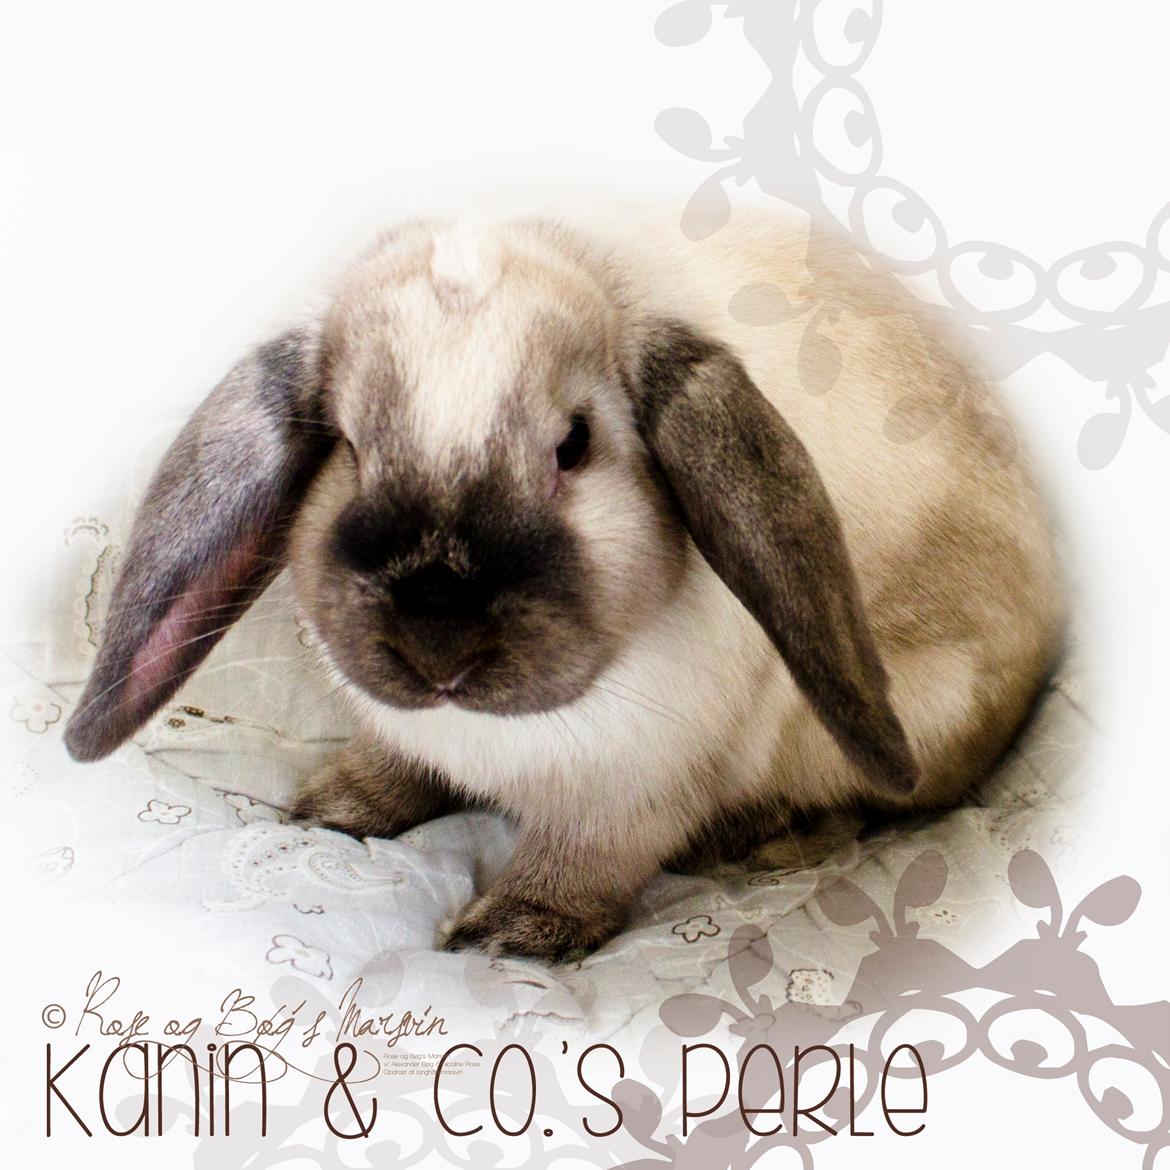 Kanin Kanin & Co.'s Perle - Kanin & Co.'s Perle <3 Den 9. oktober 2013 billede 38